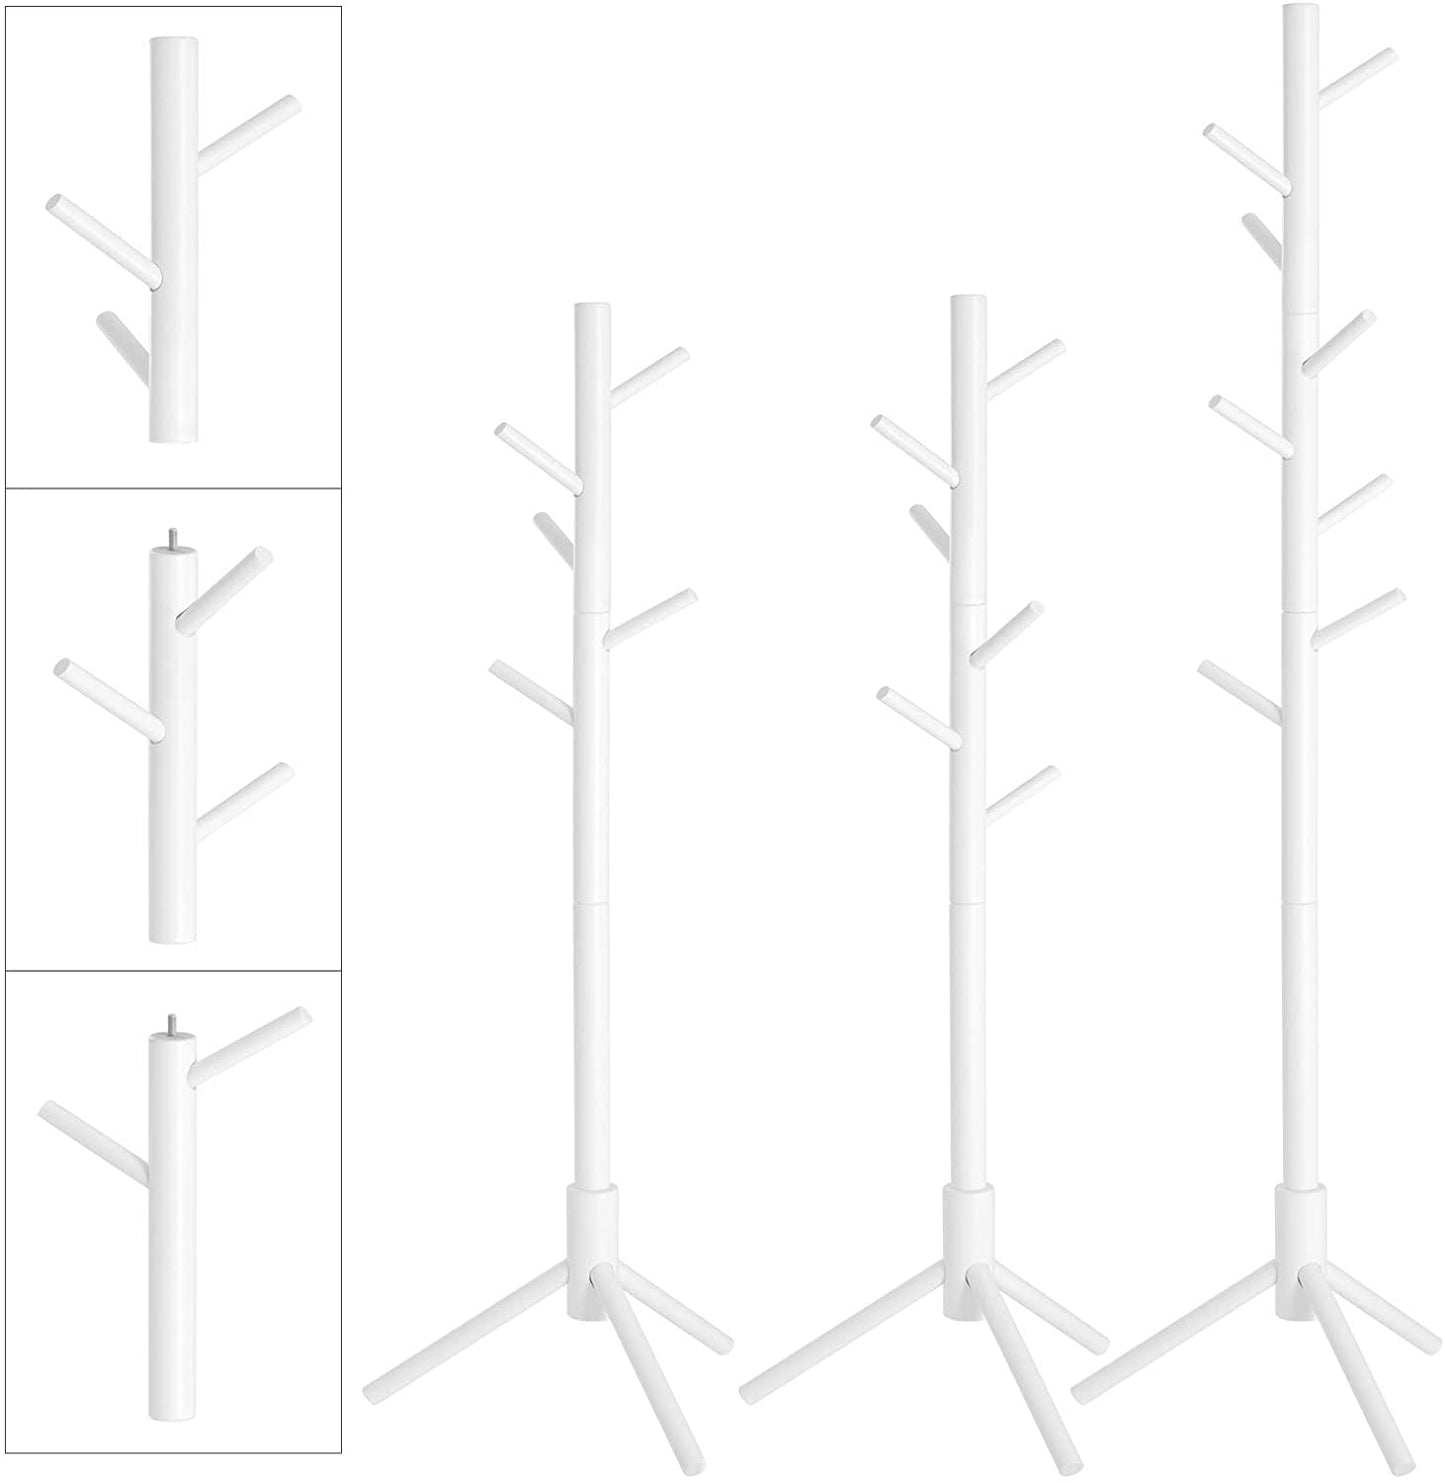 Porte-manteau Cavignac de Nancy - Autoportant - Portant - Bois massif - 8 Crochets - En forme d'arbre - Gris/Blanc - 47 x 47 x 175 cm